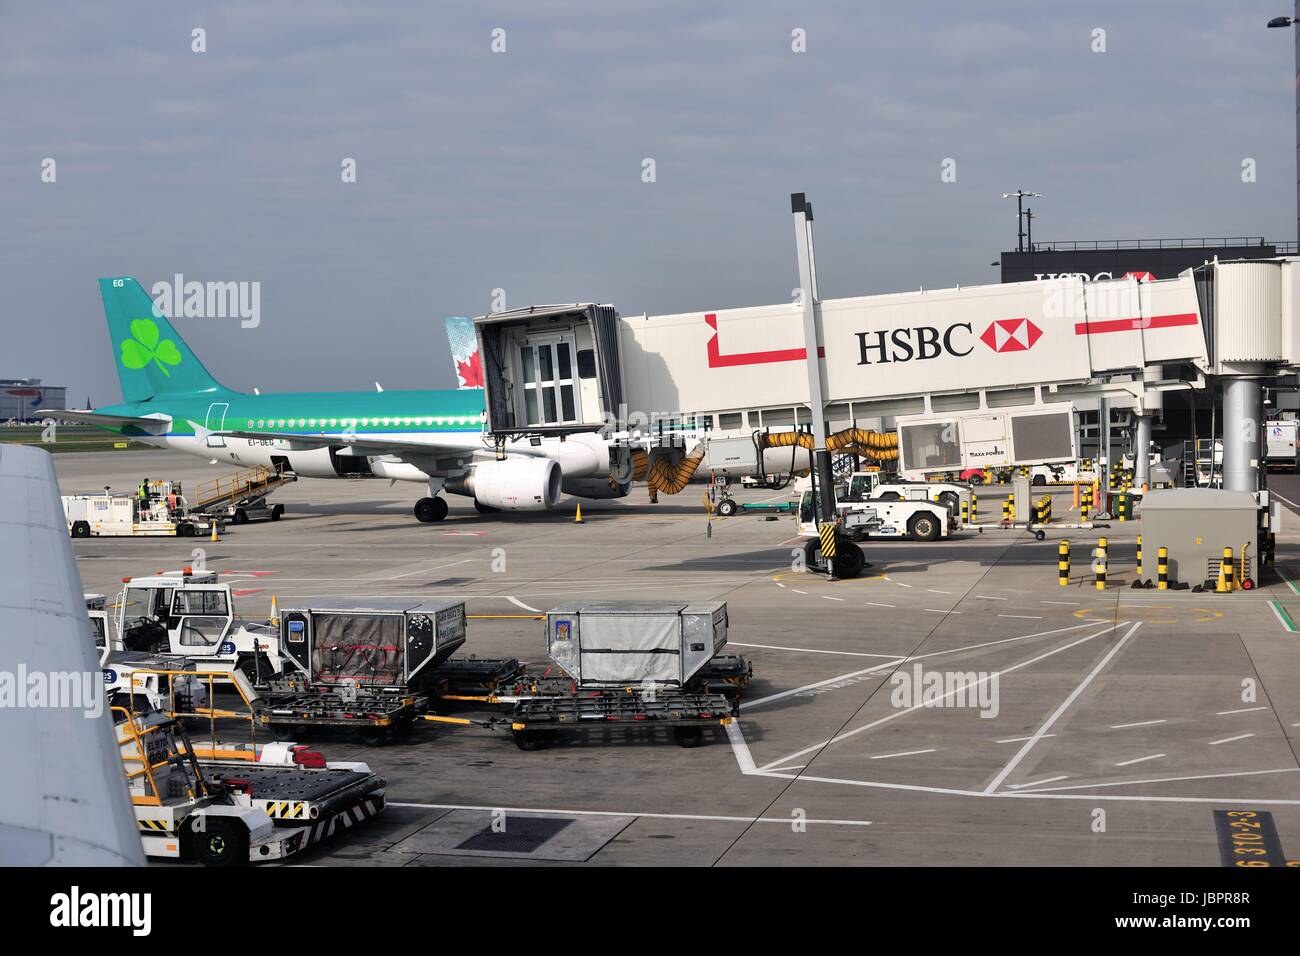 Aer Lingus avion à l'aérogare au milieu d'activité à l'Aéroport International d'Heathrow à Londres. Londres, Angleterre, Royaume-Uni. Banque D'Images